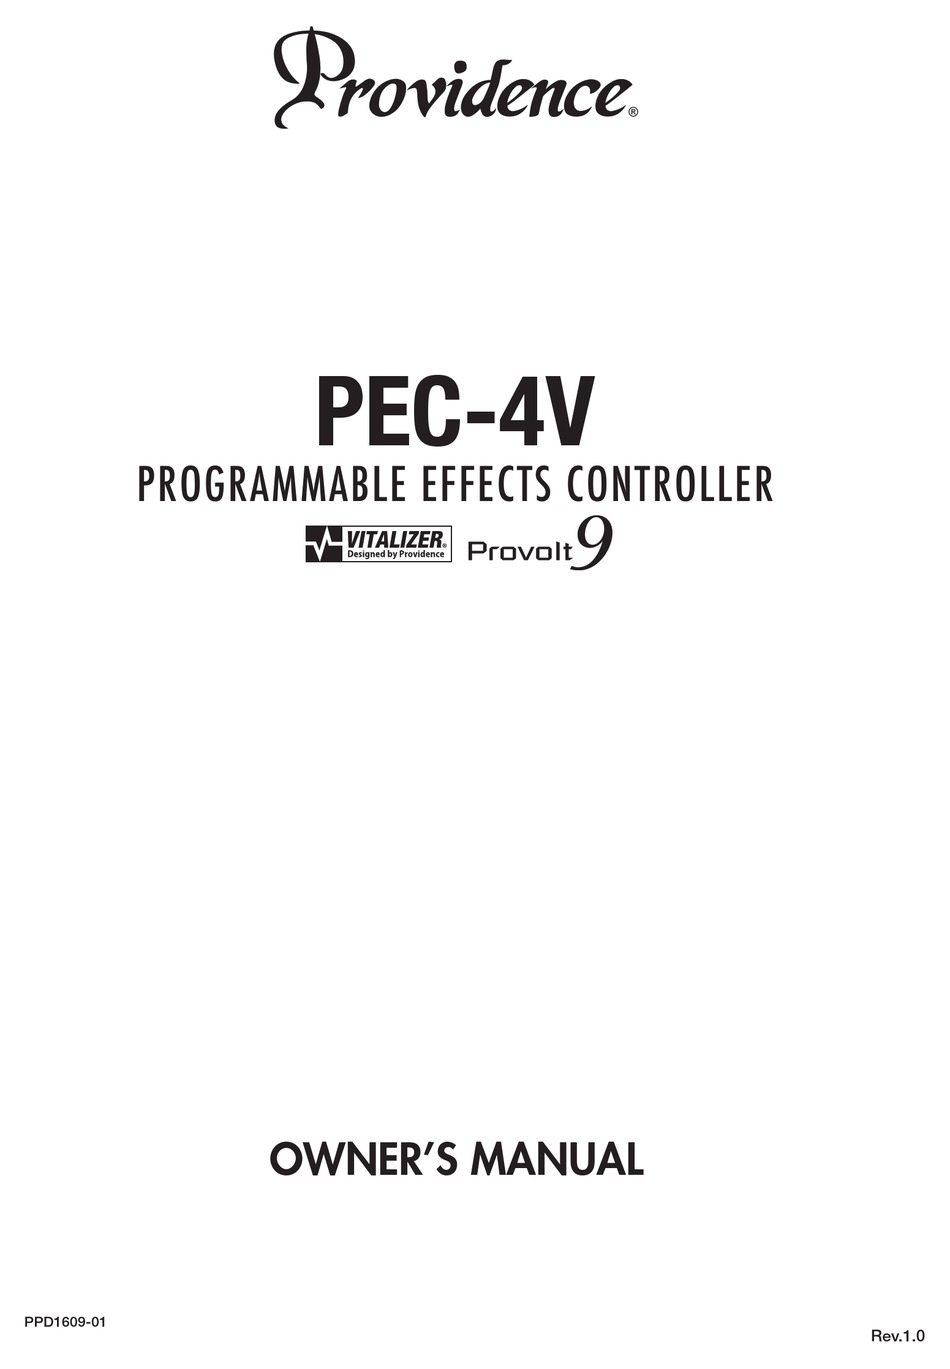 PROVIDENCE PEC-4V OWNER'S MANUAL Pdf Download | ManualsLib